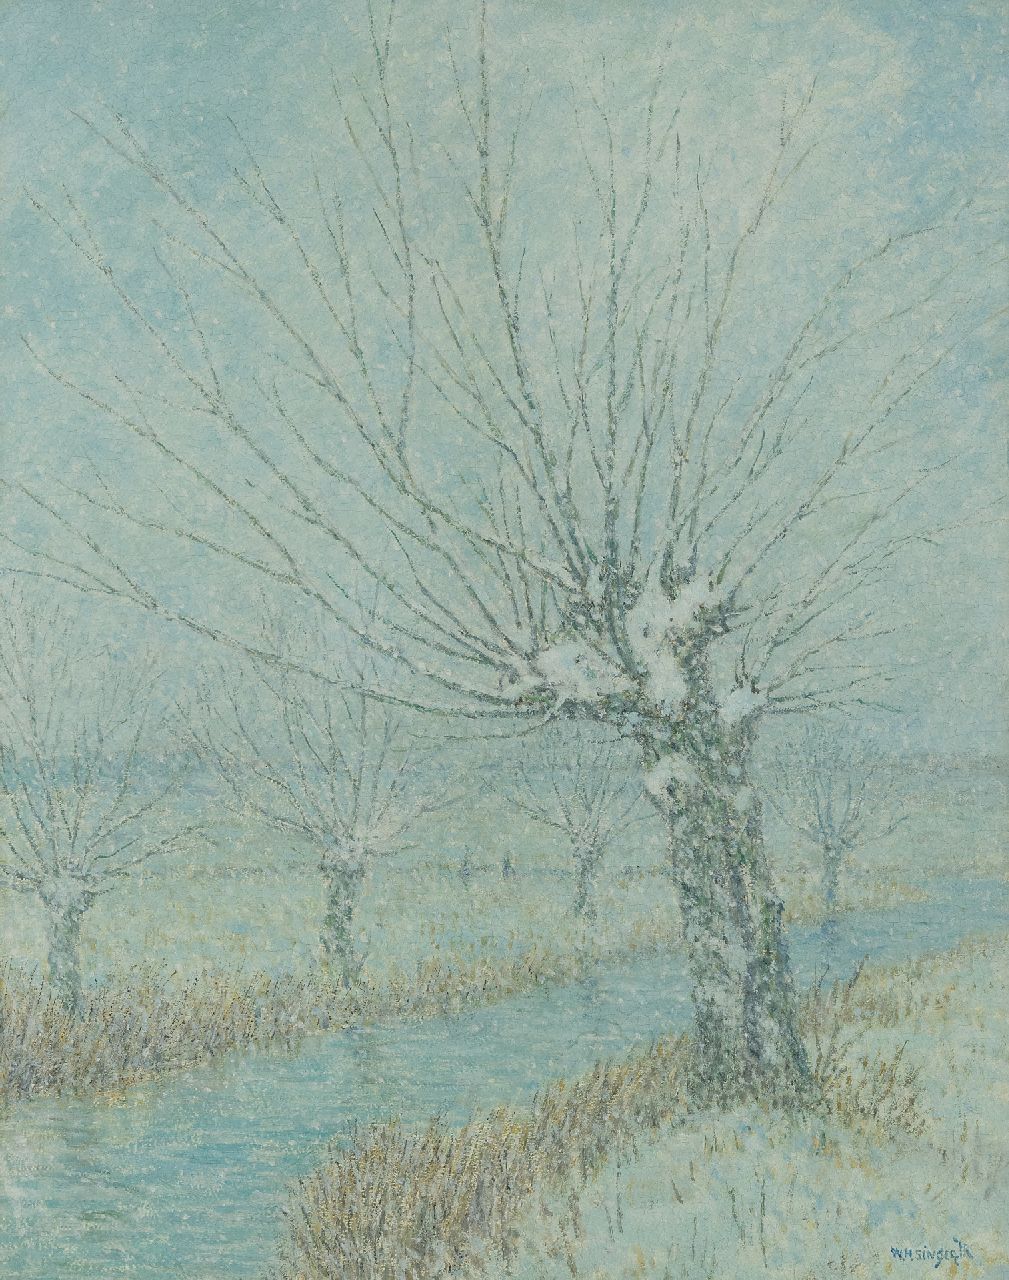 Singer W.H.  | William Henry Singer, The First Snow, Holland, Öl auf Holzfaser 50,5 x 40,0 cm, Unterzeichnet u.r. und im Verso datiert 1933